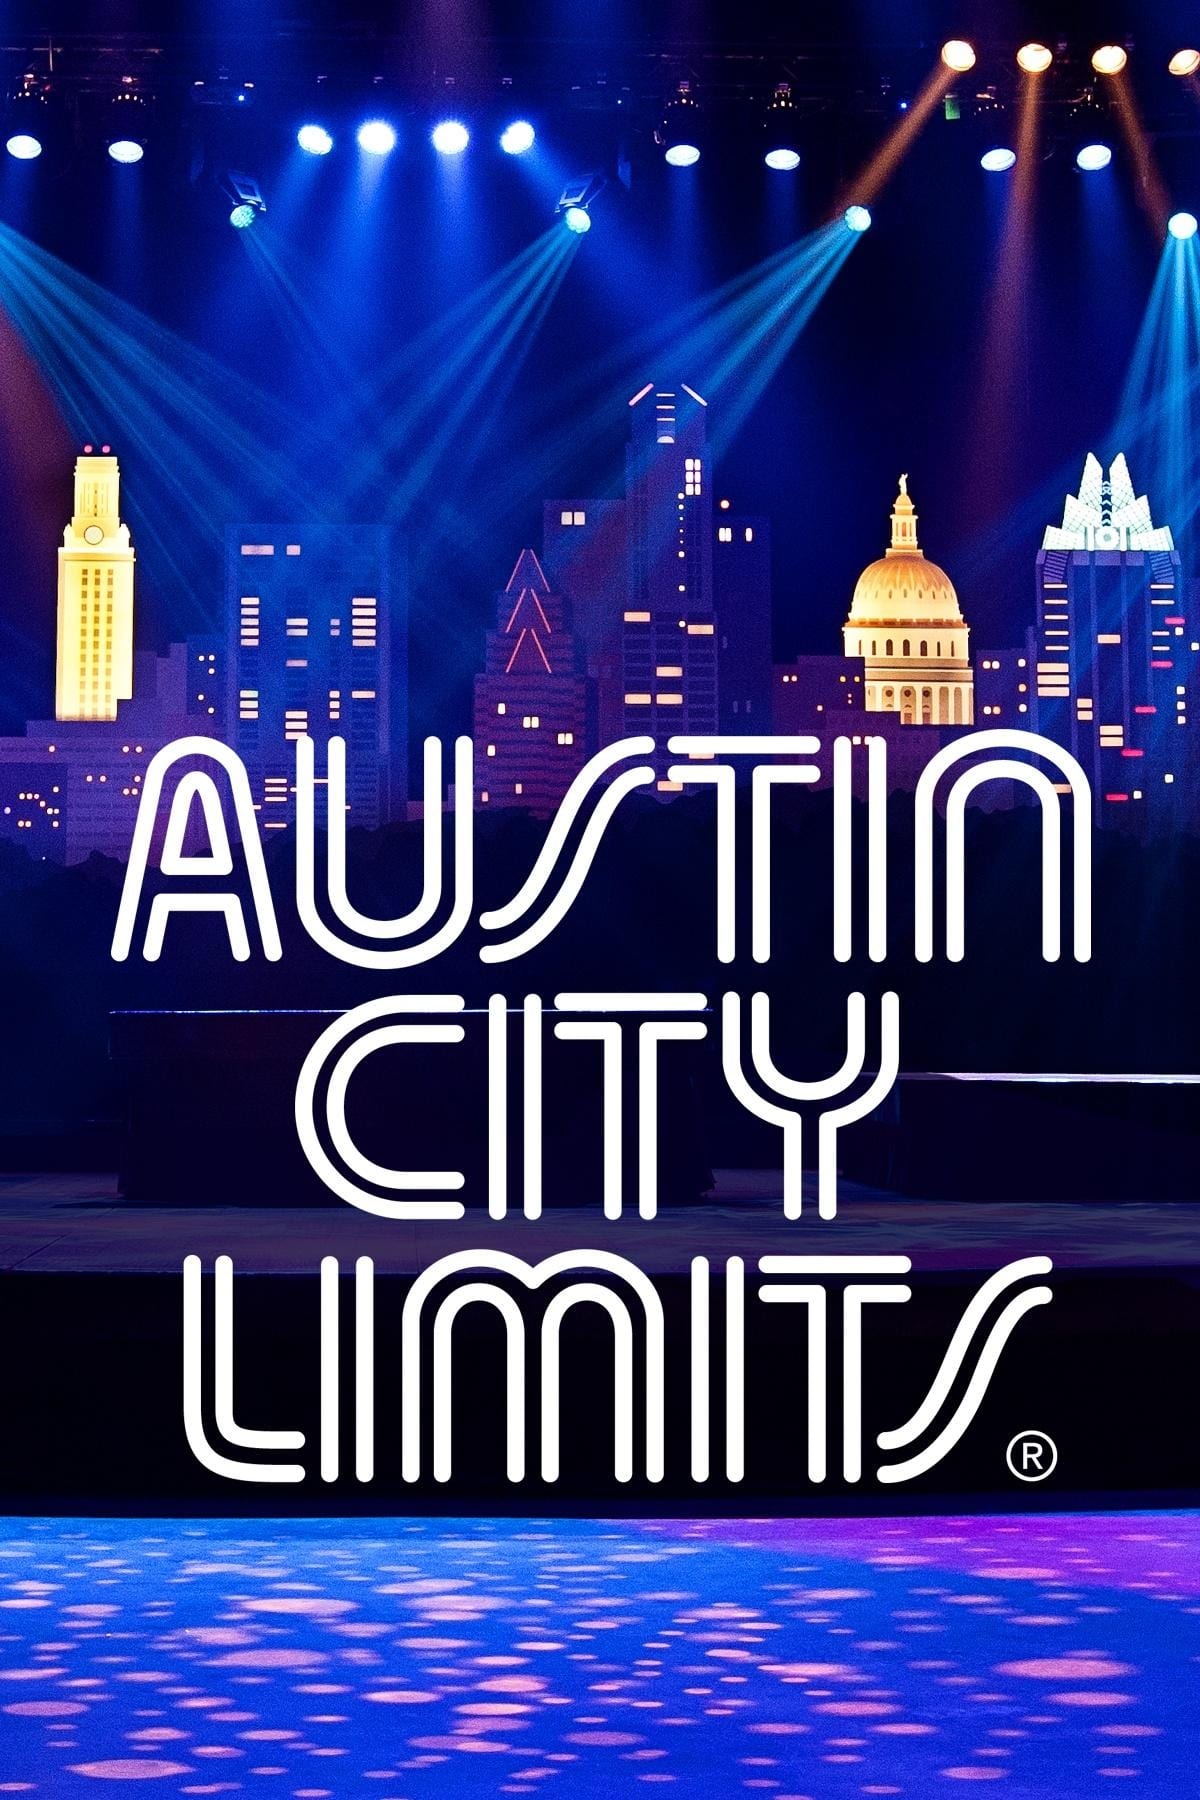 John Mayer - Austin City Limits